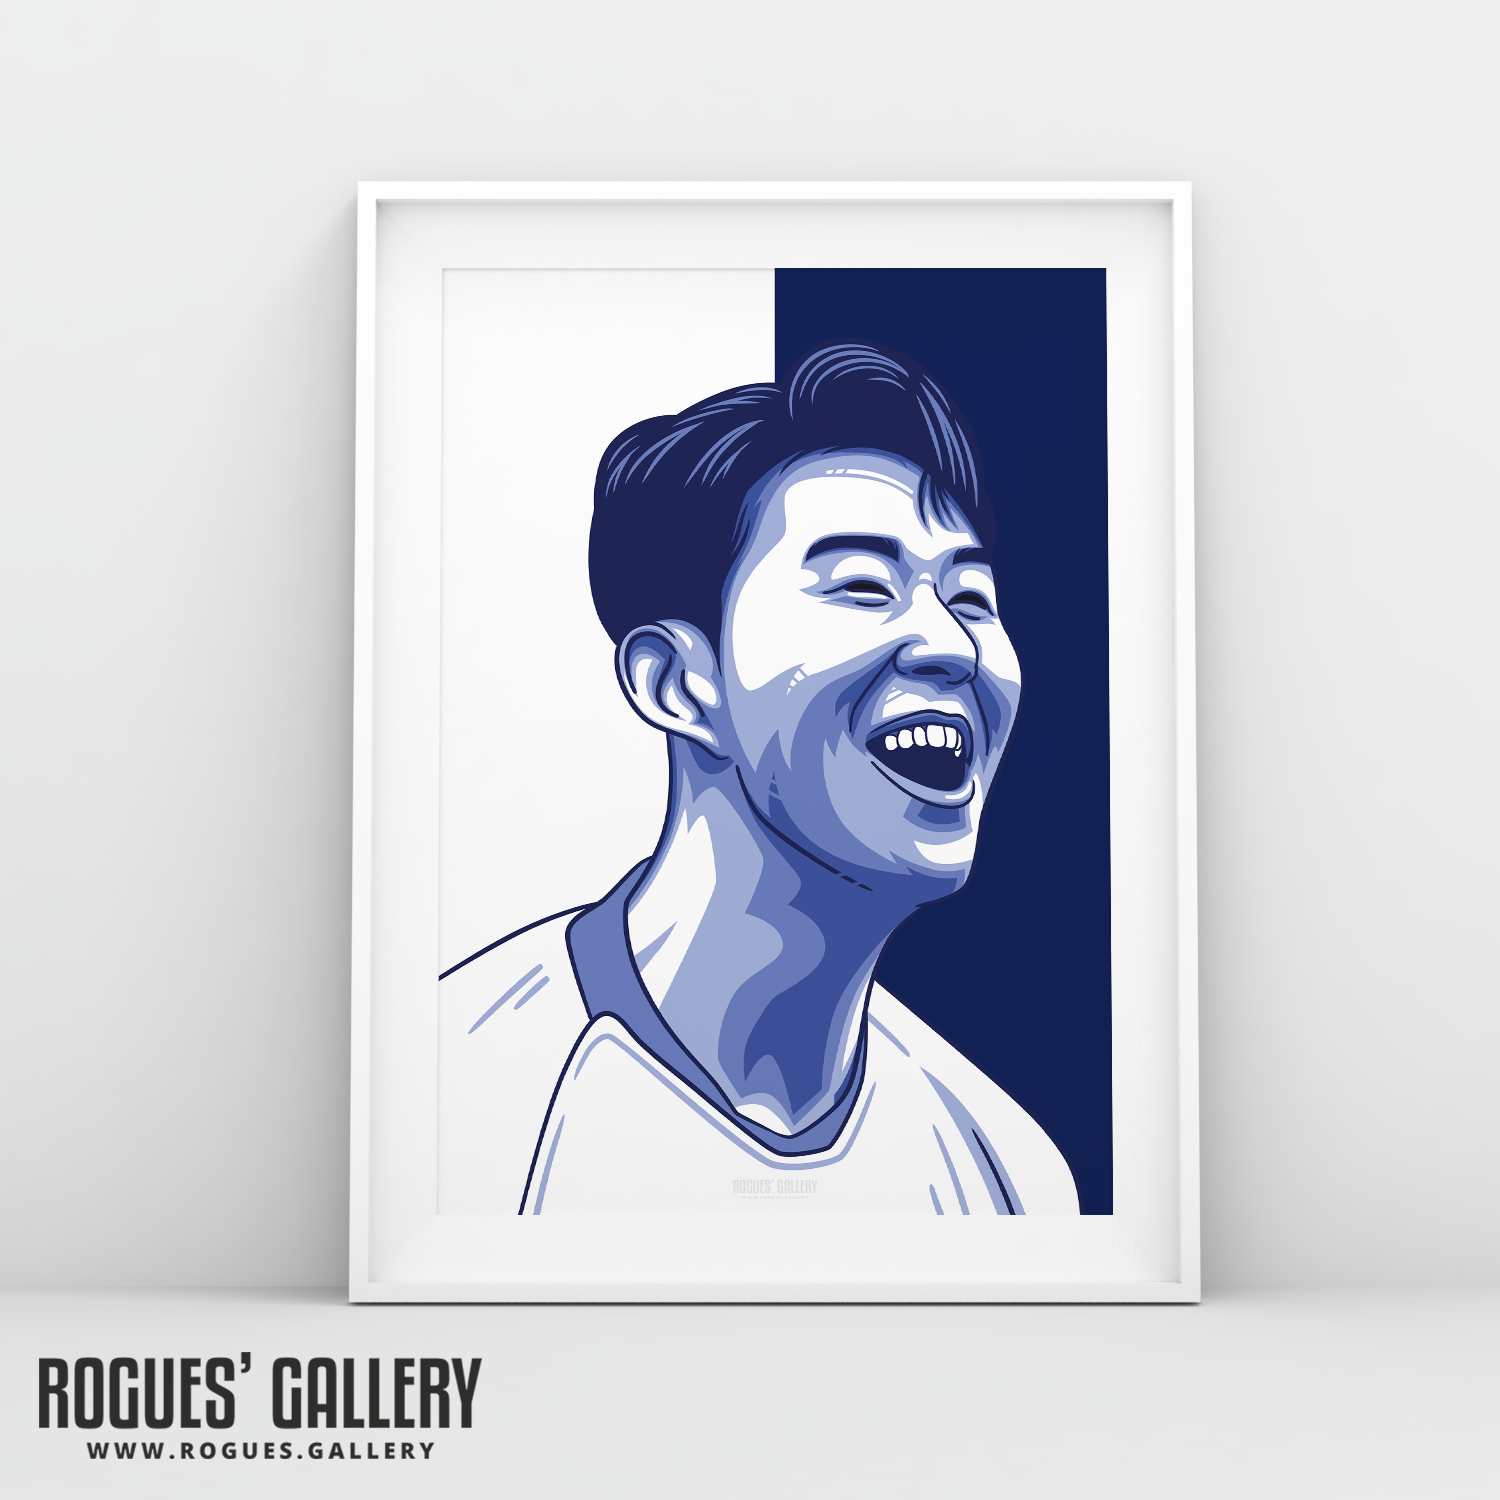 Son Heung-min THFC Spurs striker A3 print art #GetBehindTheLads Tottenham Hotspur FC London South Korea Korean